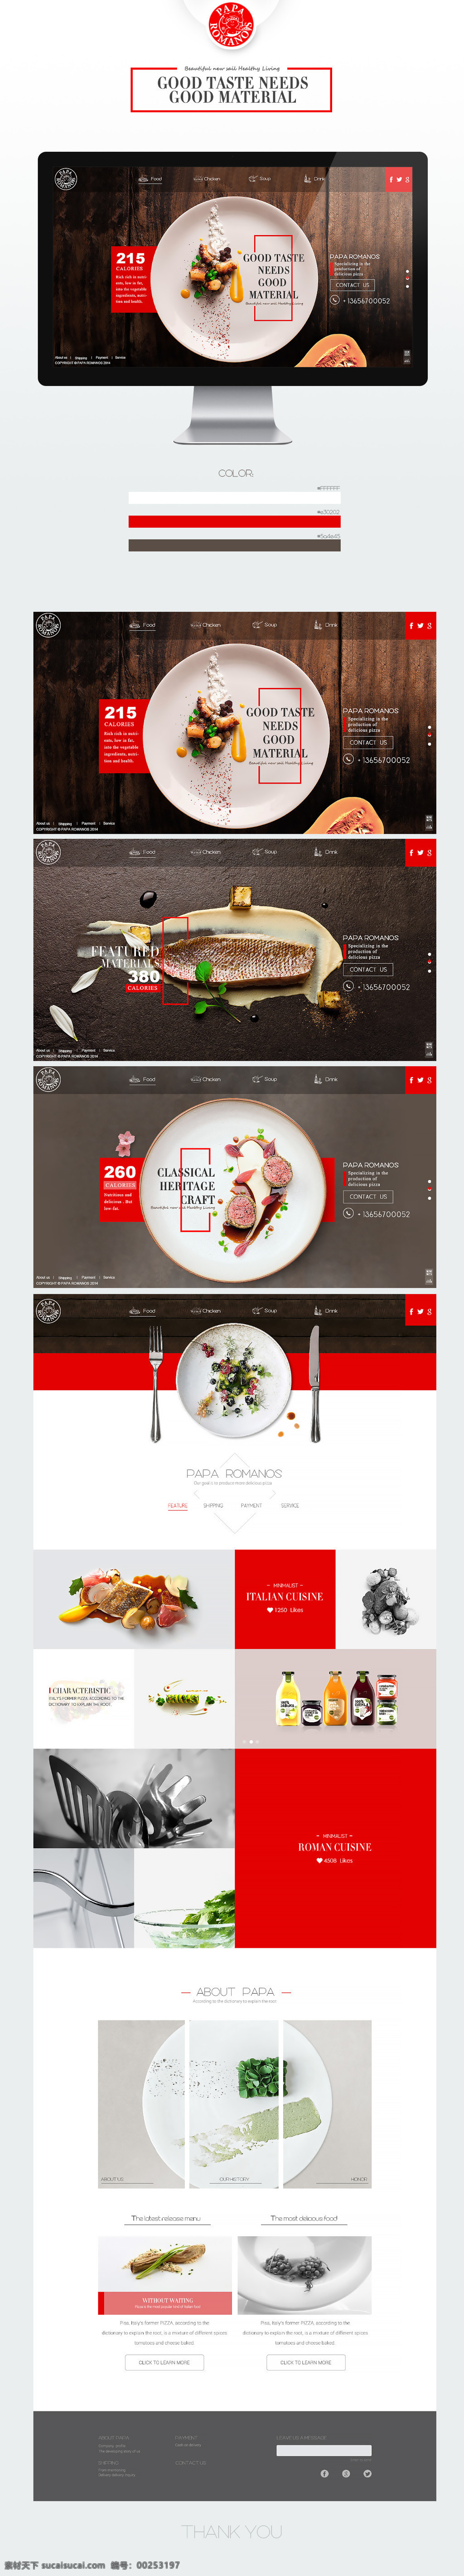 欧美 食品 专题 页面 首页 模版 欧美食品 灵感素材 平面设计 白色